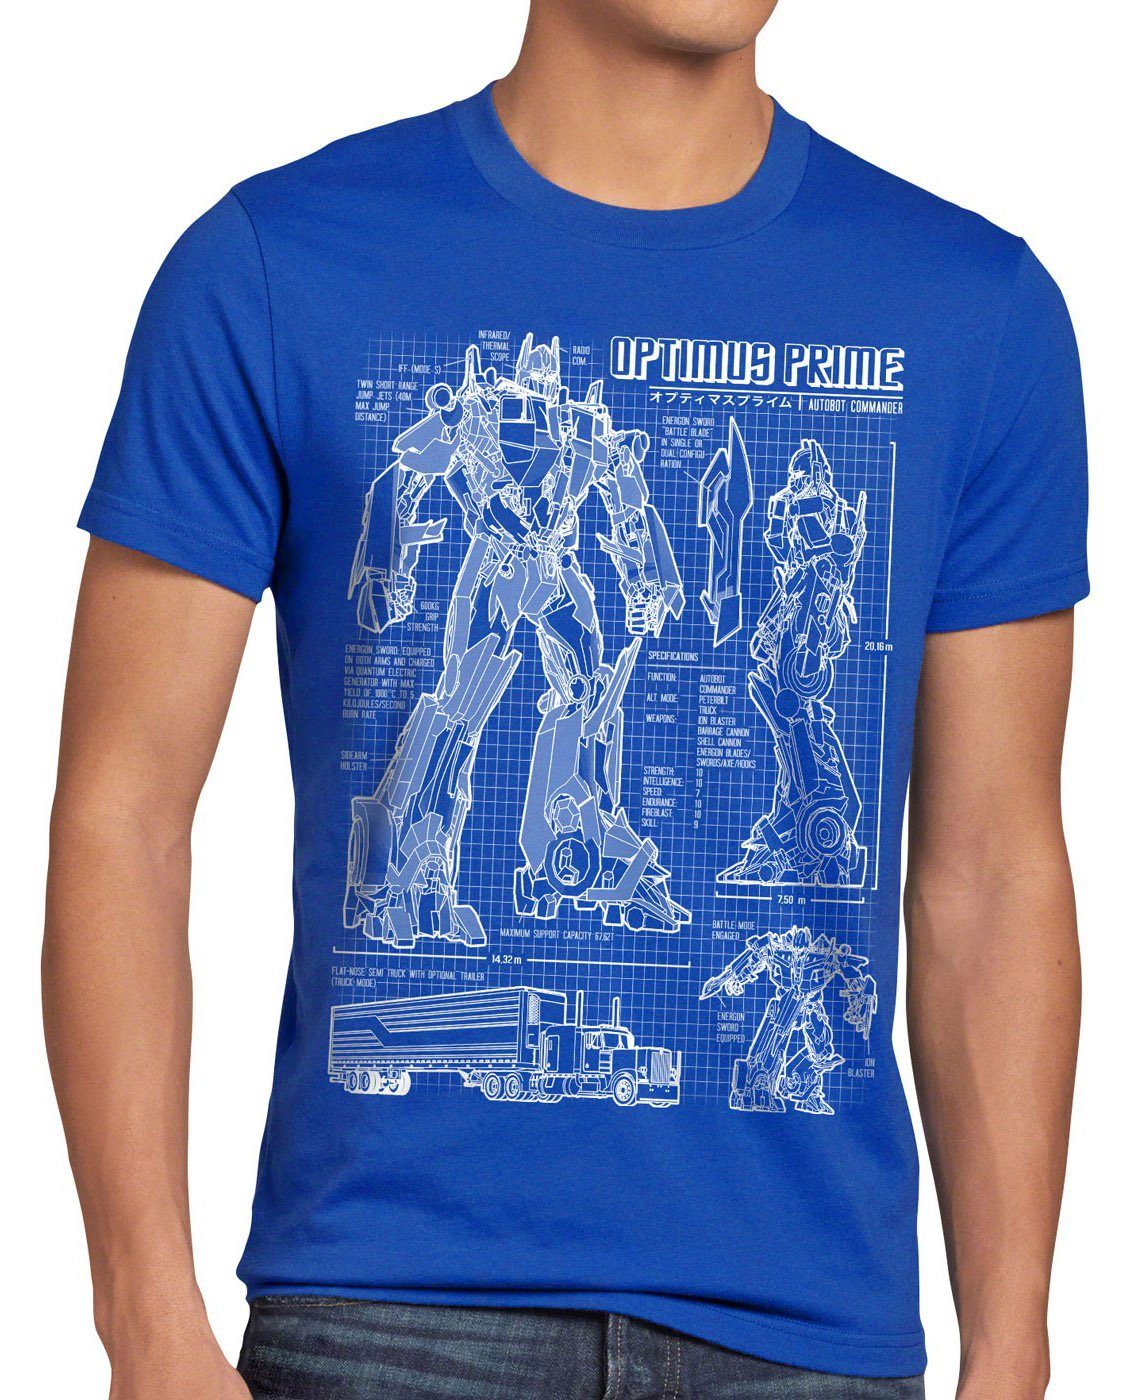 style3 Print-Shirt Herren T-Shirt Prime blaupause autobot Optimus